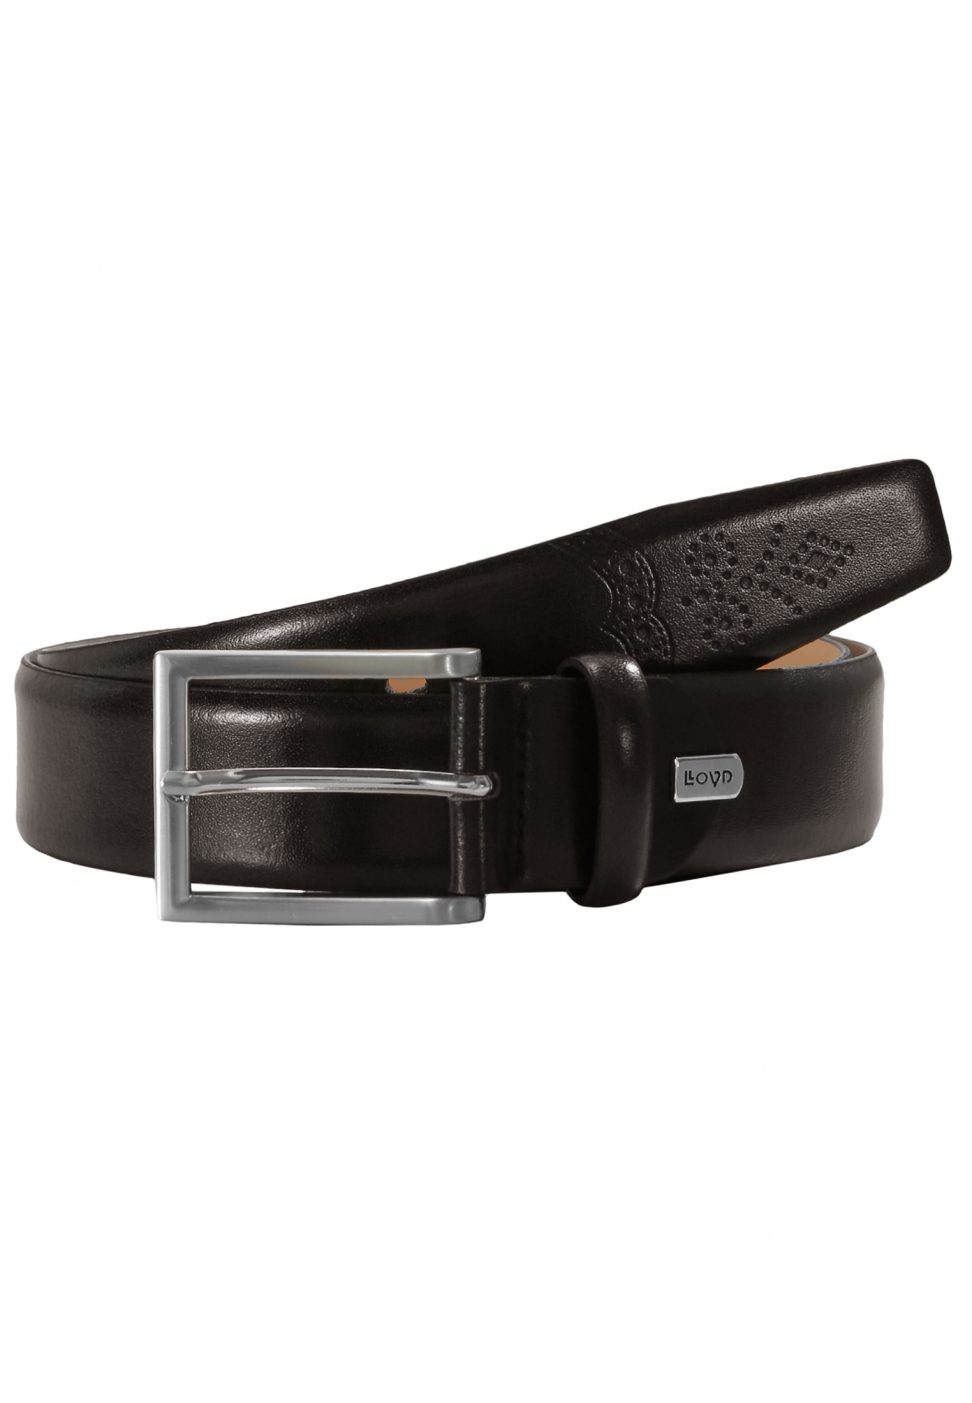 LLOYD Men's Belts Pasek Skórzany 1080/40 skw-brązowy 3,5 cm